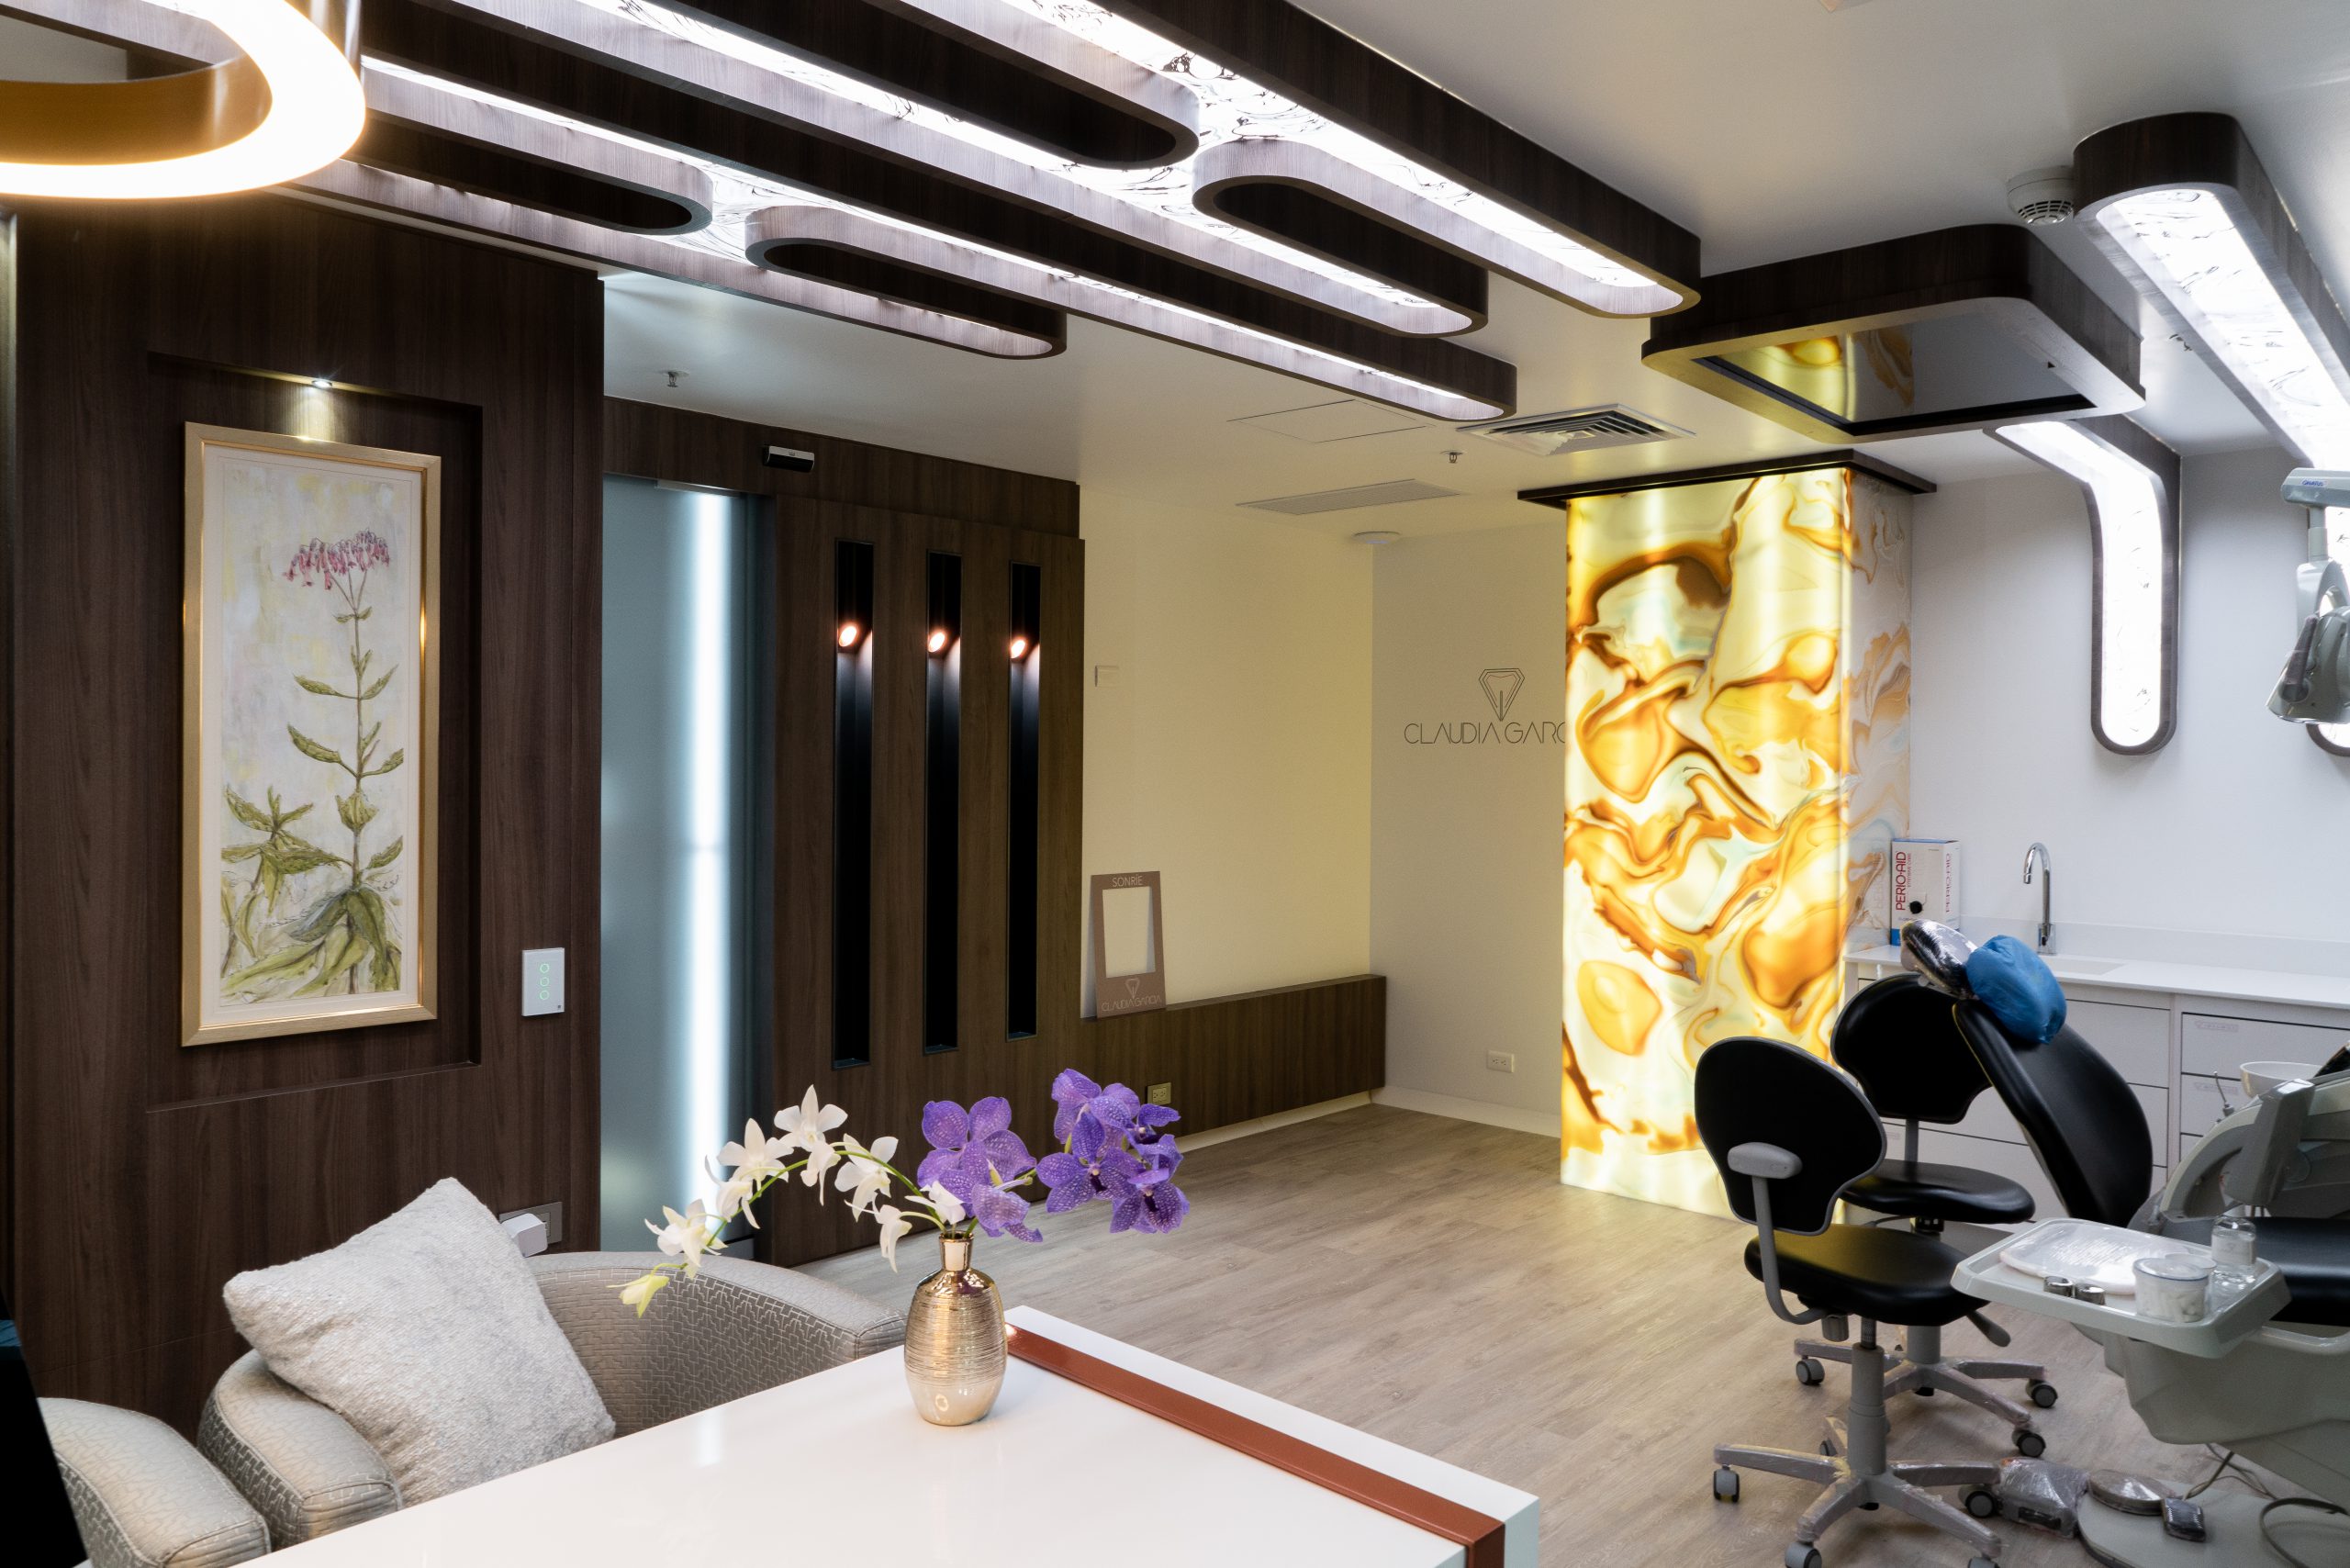 Exclusividad, estilo e interiorismo se unen en este consultorio odontológico de Medellín